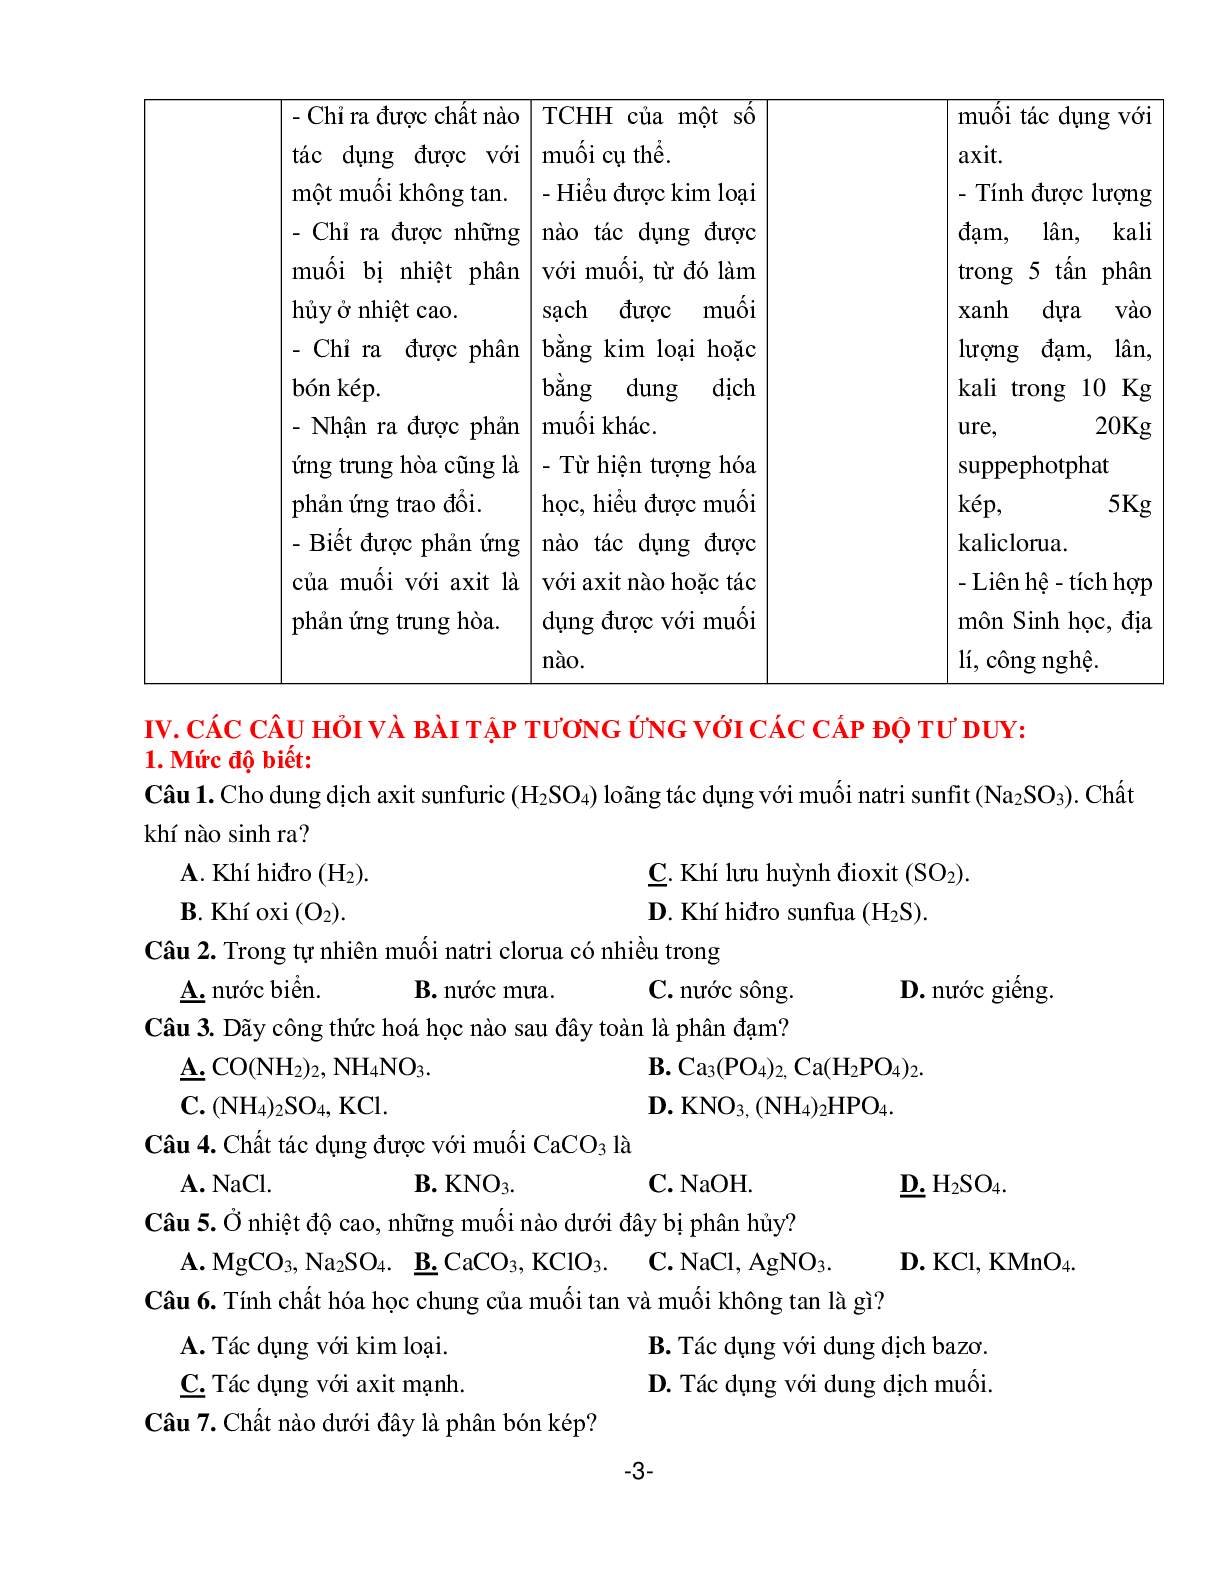 Giáo án Hóa học 9 chủ đề tính chất của muối và phân bón hóa học (trang 3)